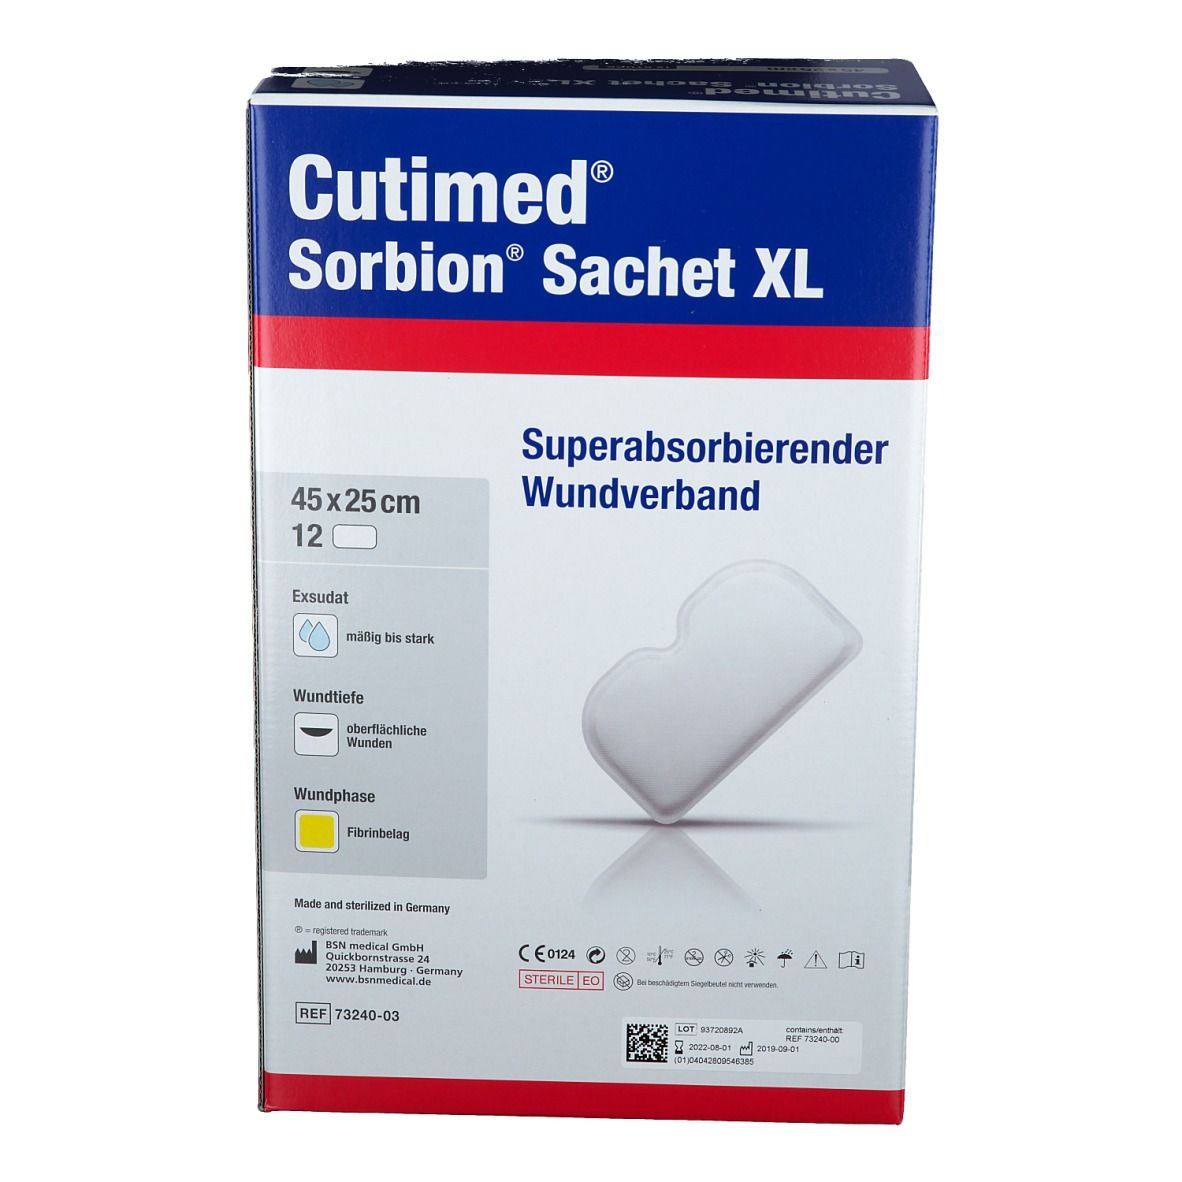 Cutimed® Sorbion Sachet XL 45 cm x 25 cm